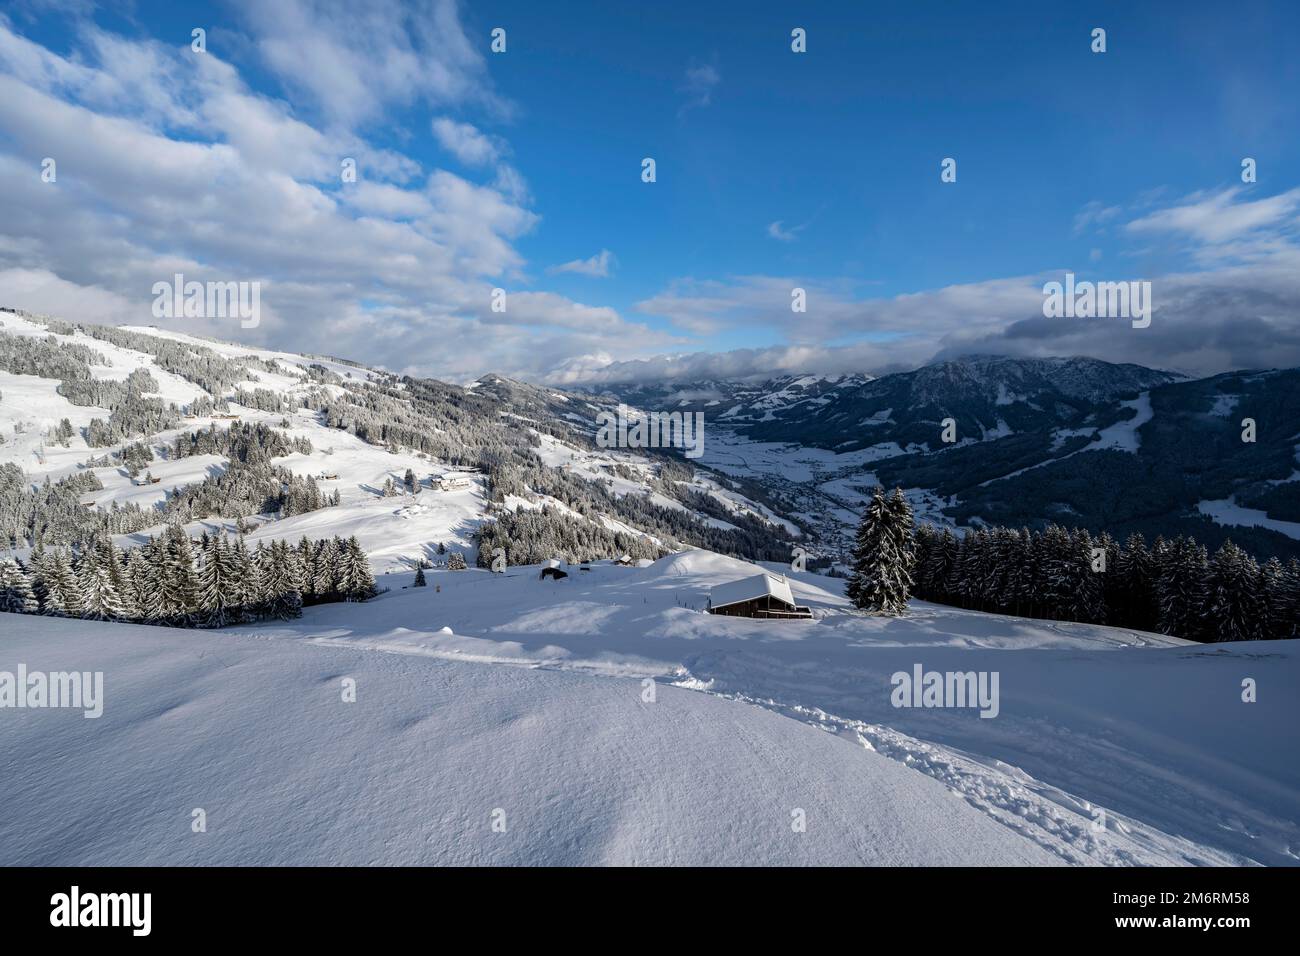 Paesaggio invernale, rifugio nella neve, montagna, nel comprensorio sciistico di Bixen im Thale, Tirolo, Austria Foto Stock